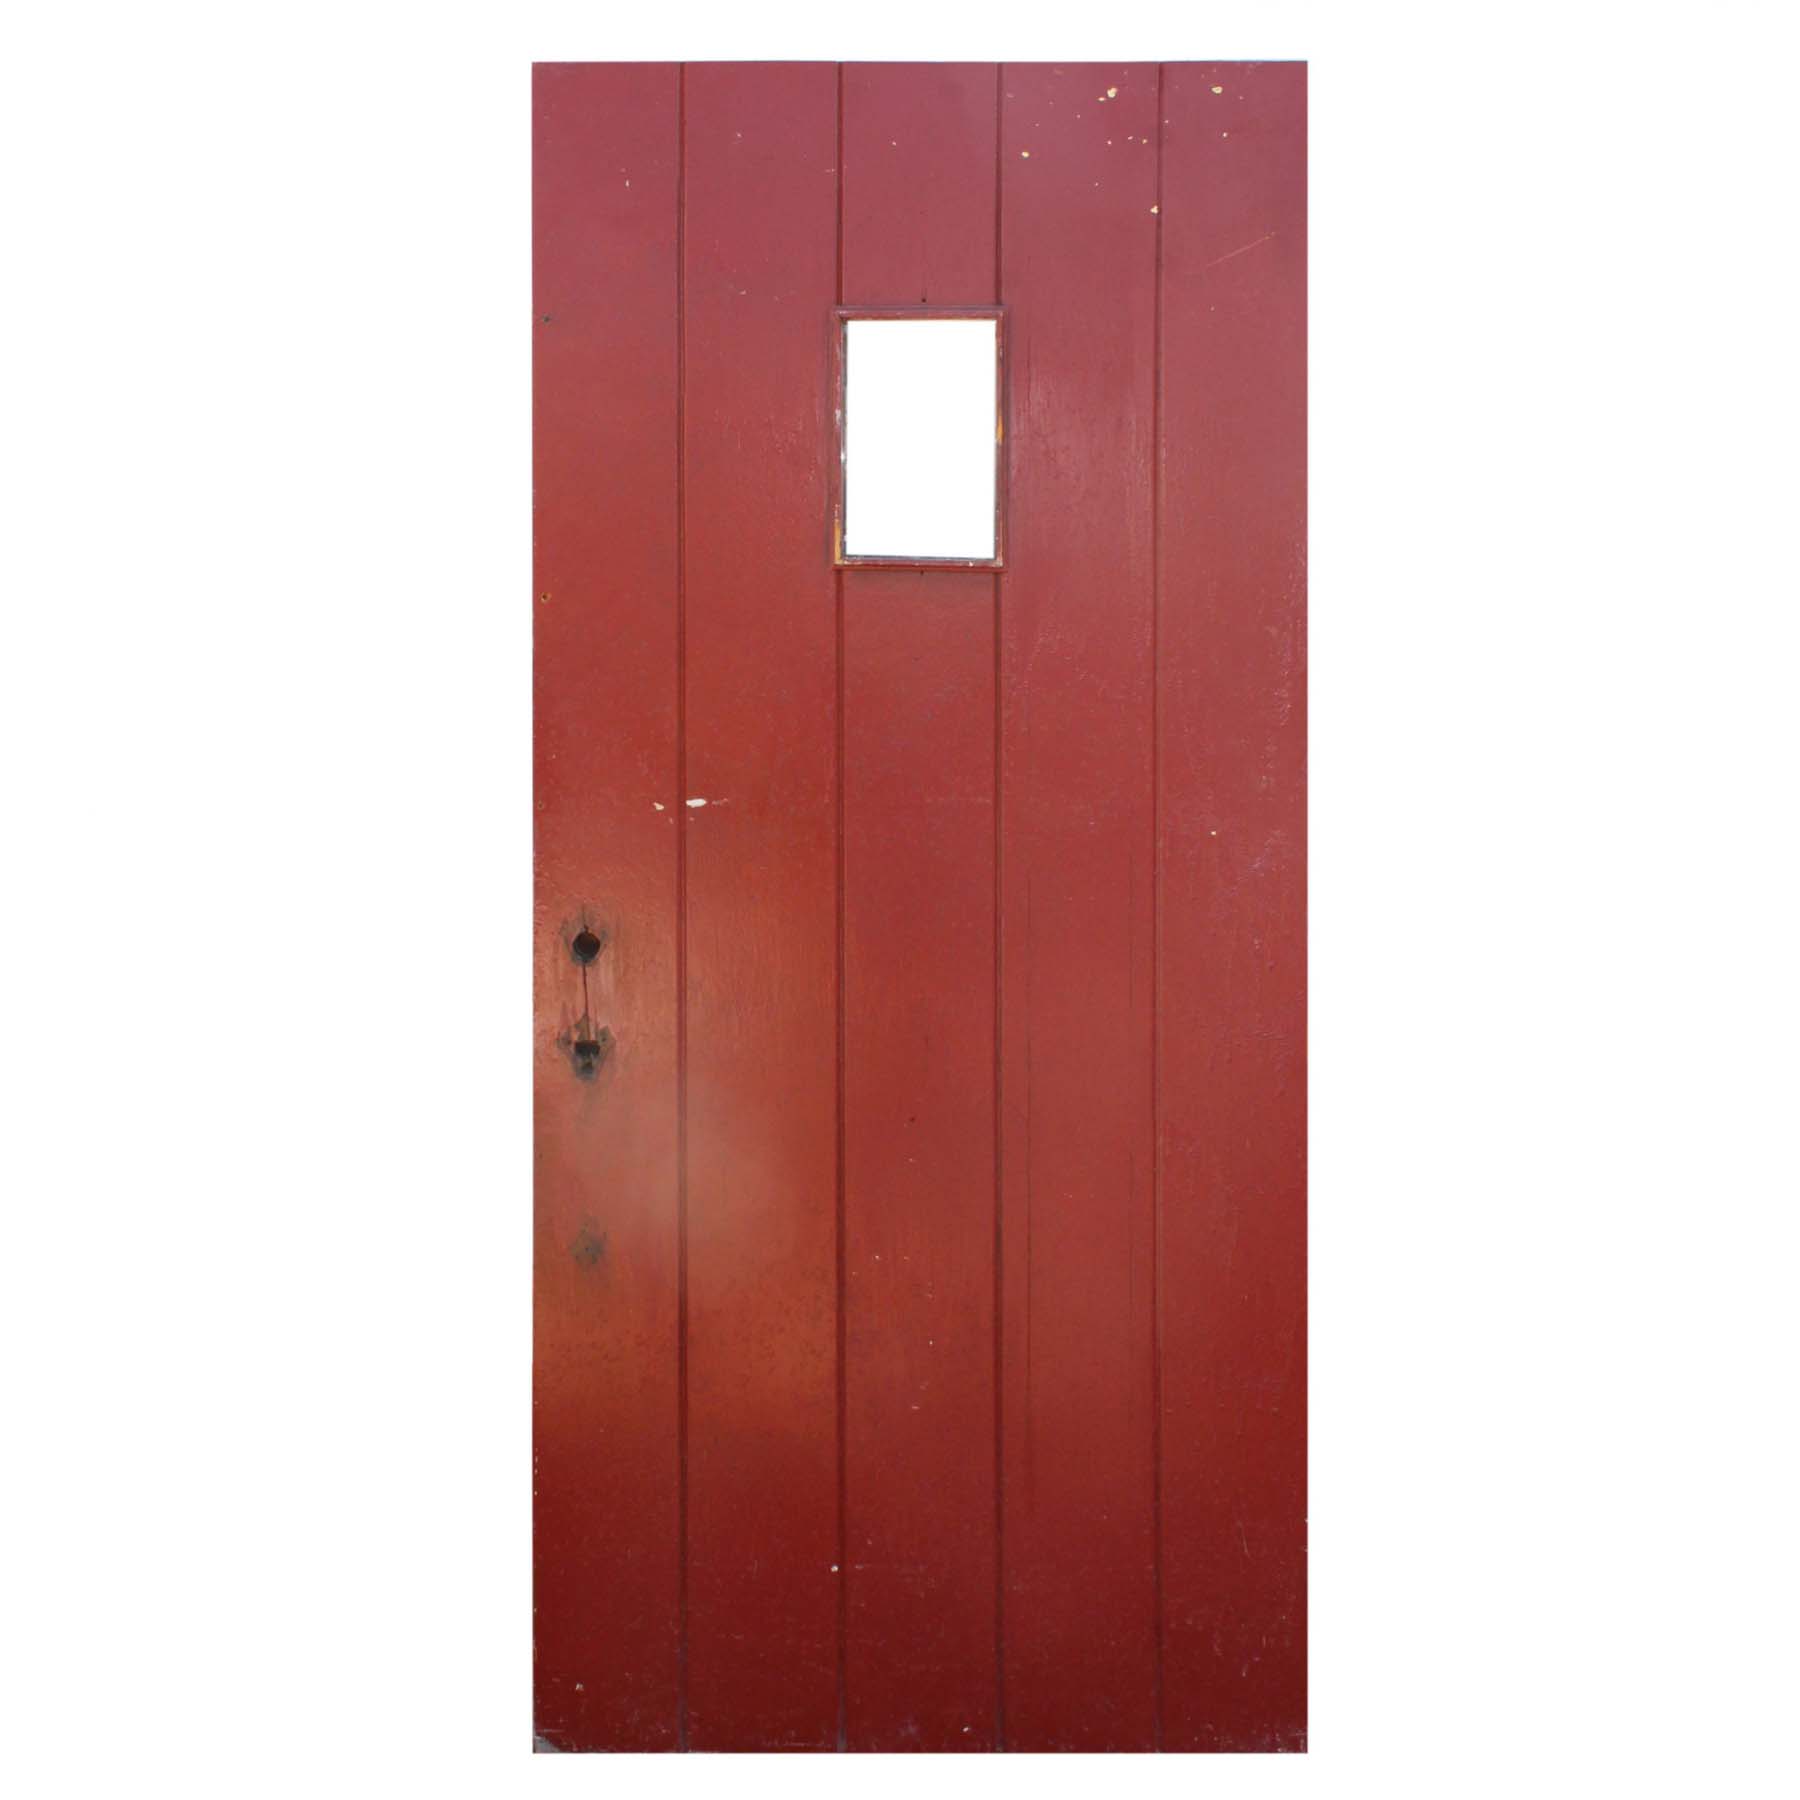 Salvaged 35" Exterior Plank Door with Window-0